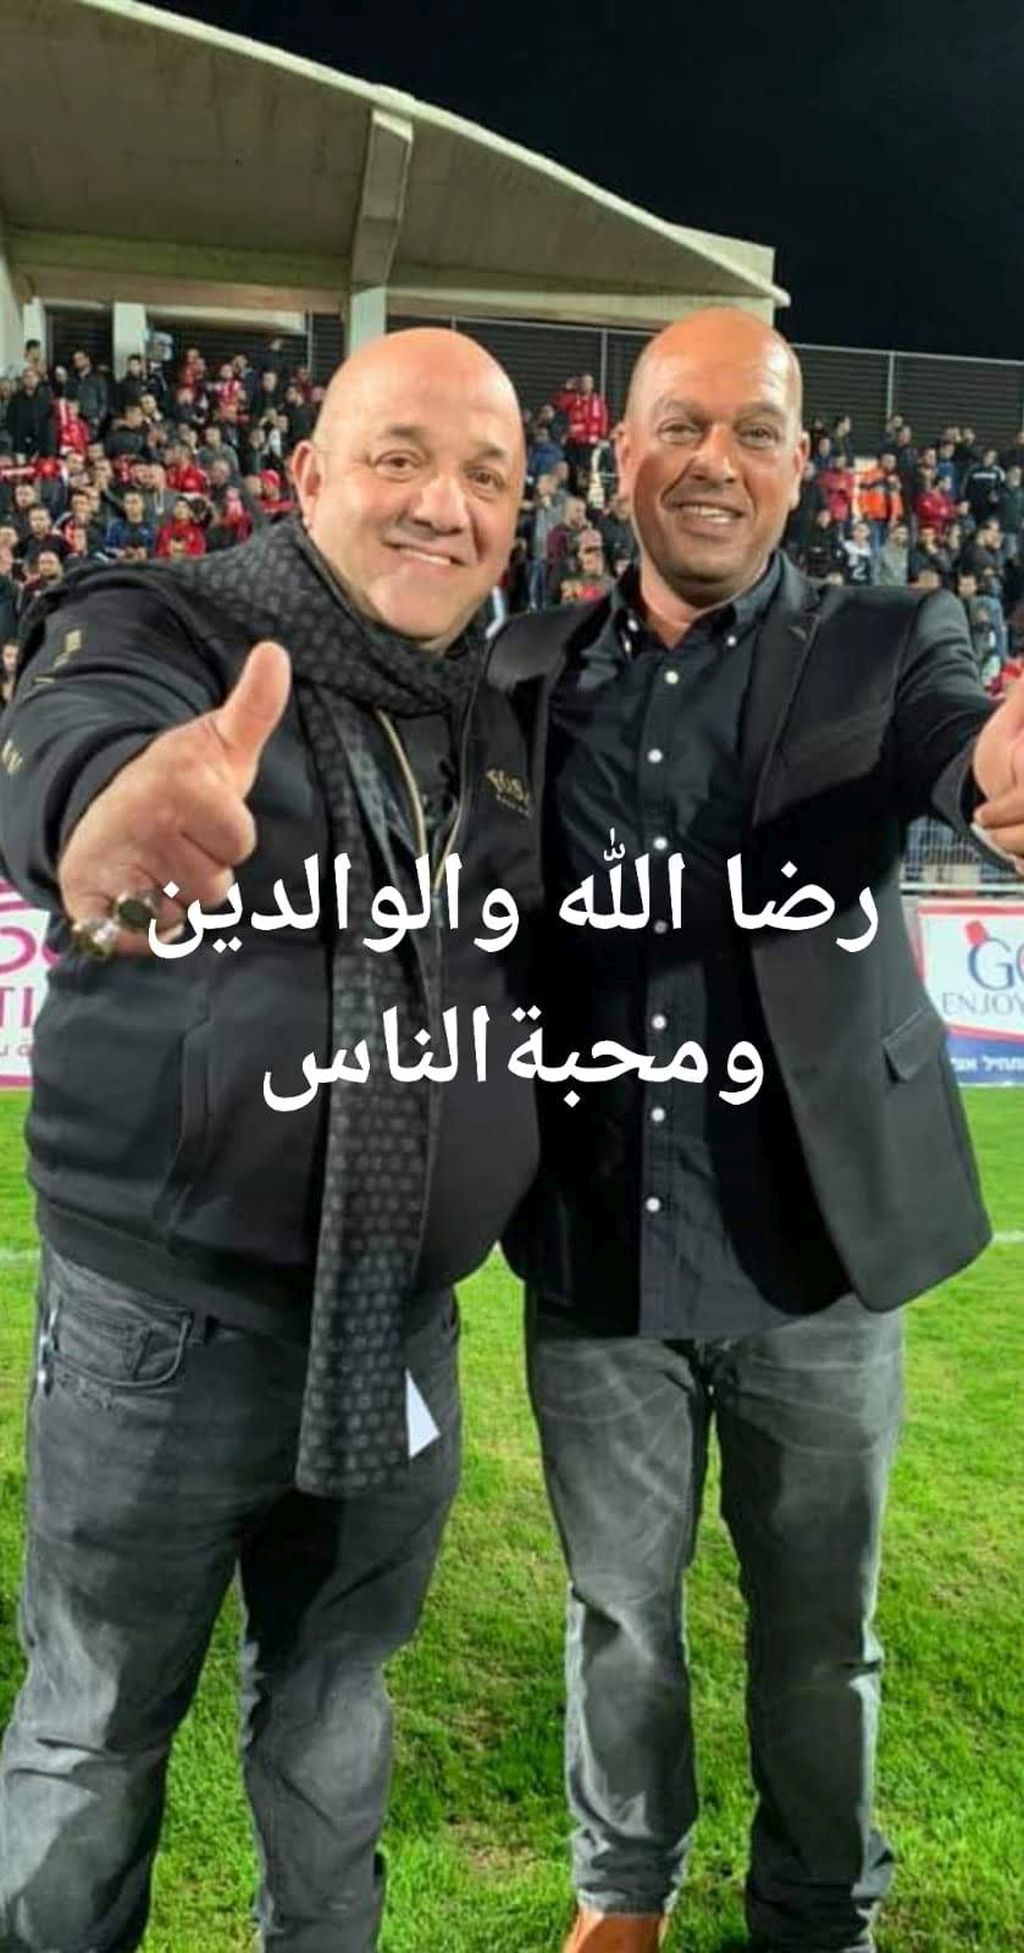 Muhamad Suleiman y Ahmad Abu el-Am, los dueños y directores del club, celebrando la victoria. El texto de la foto dice: Por el amor de Alá, los padres y el amor de la gente.